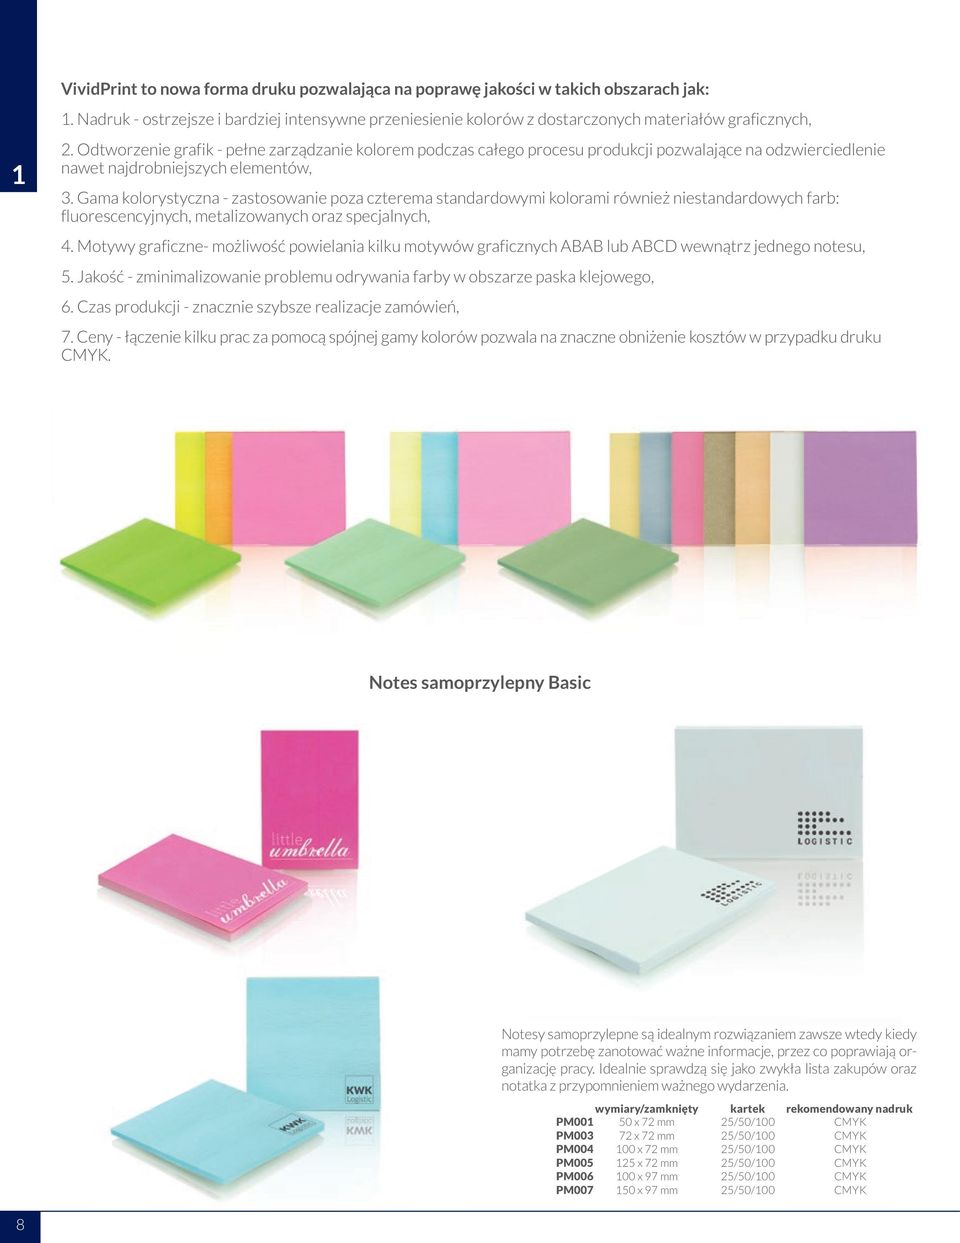 Gama kolorystyczna - zastosowanie poza czterema standardowymi kolorami również niestandardowych farb: fluorescencyjnych, metalizowanych oraz specjalnych, 4.